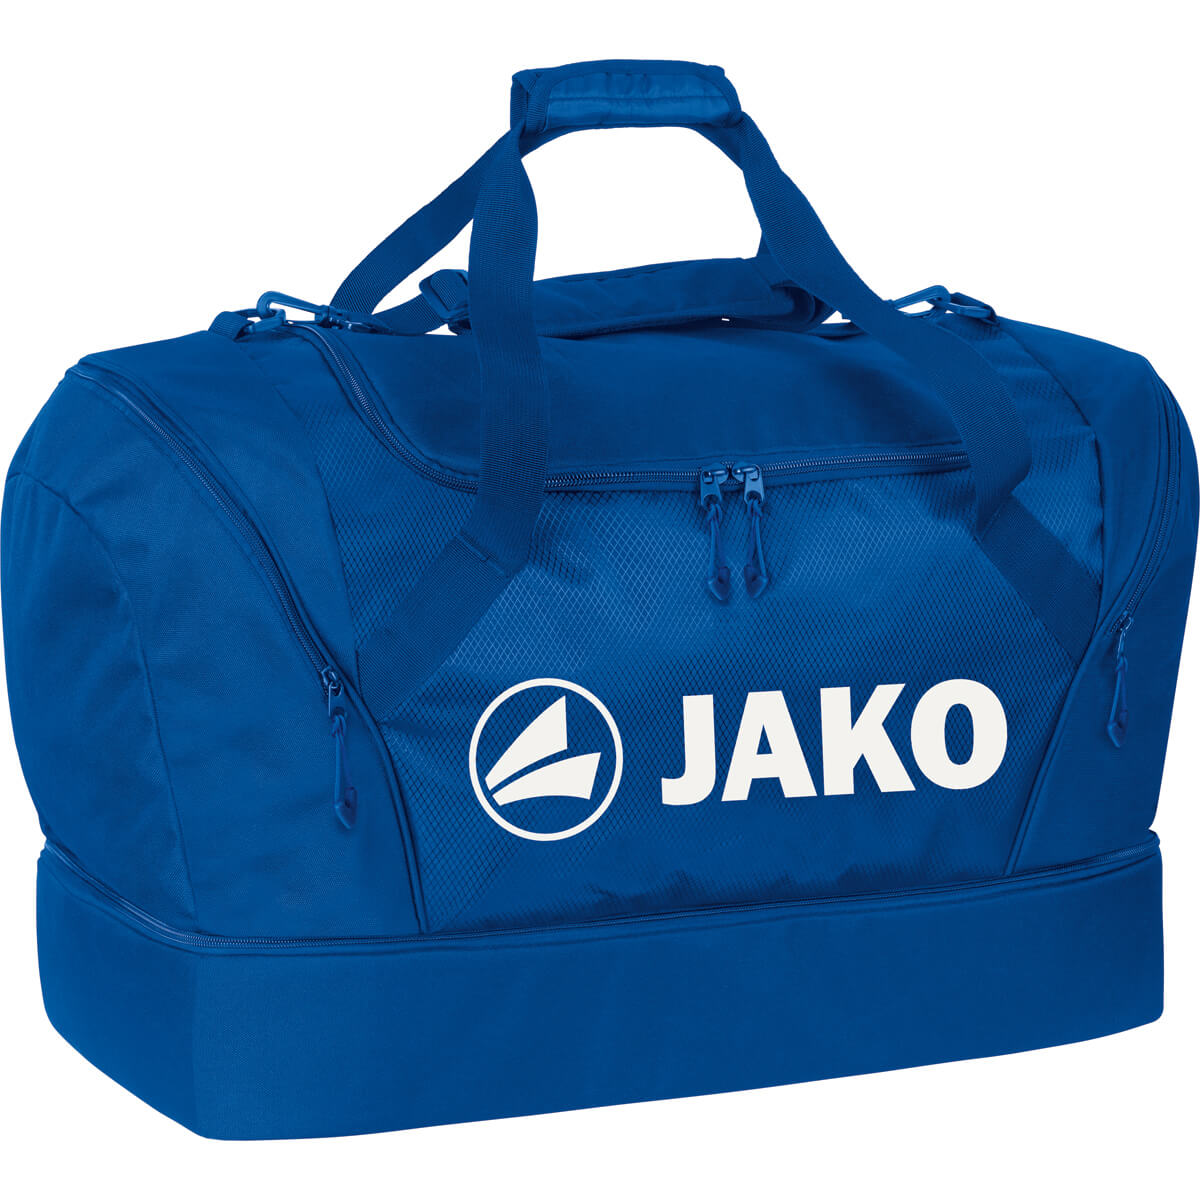 JAKO 2089-04 Sport Bag Royal Blue